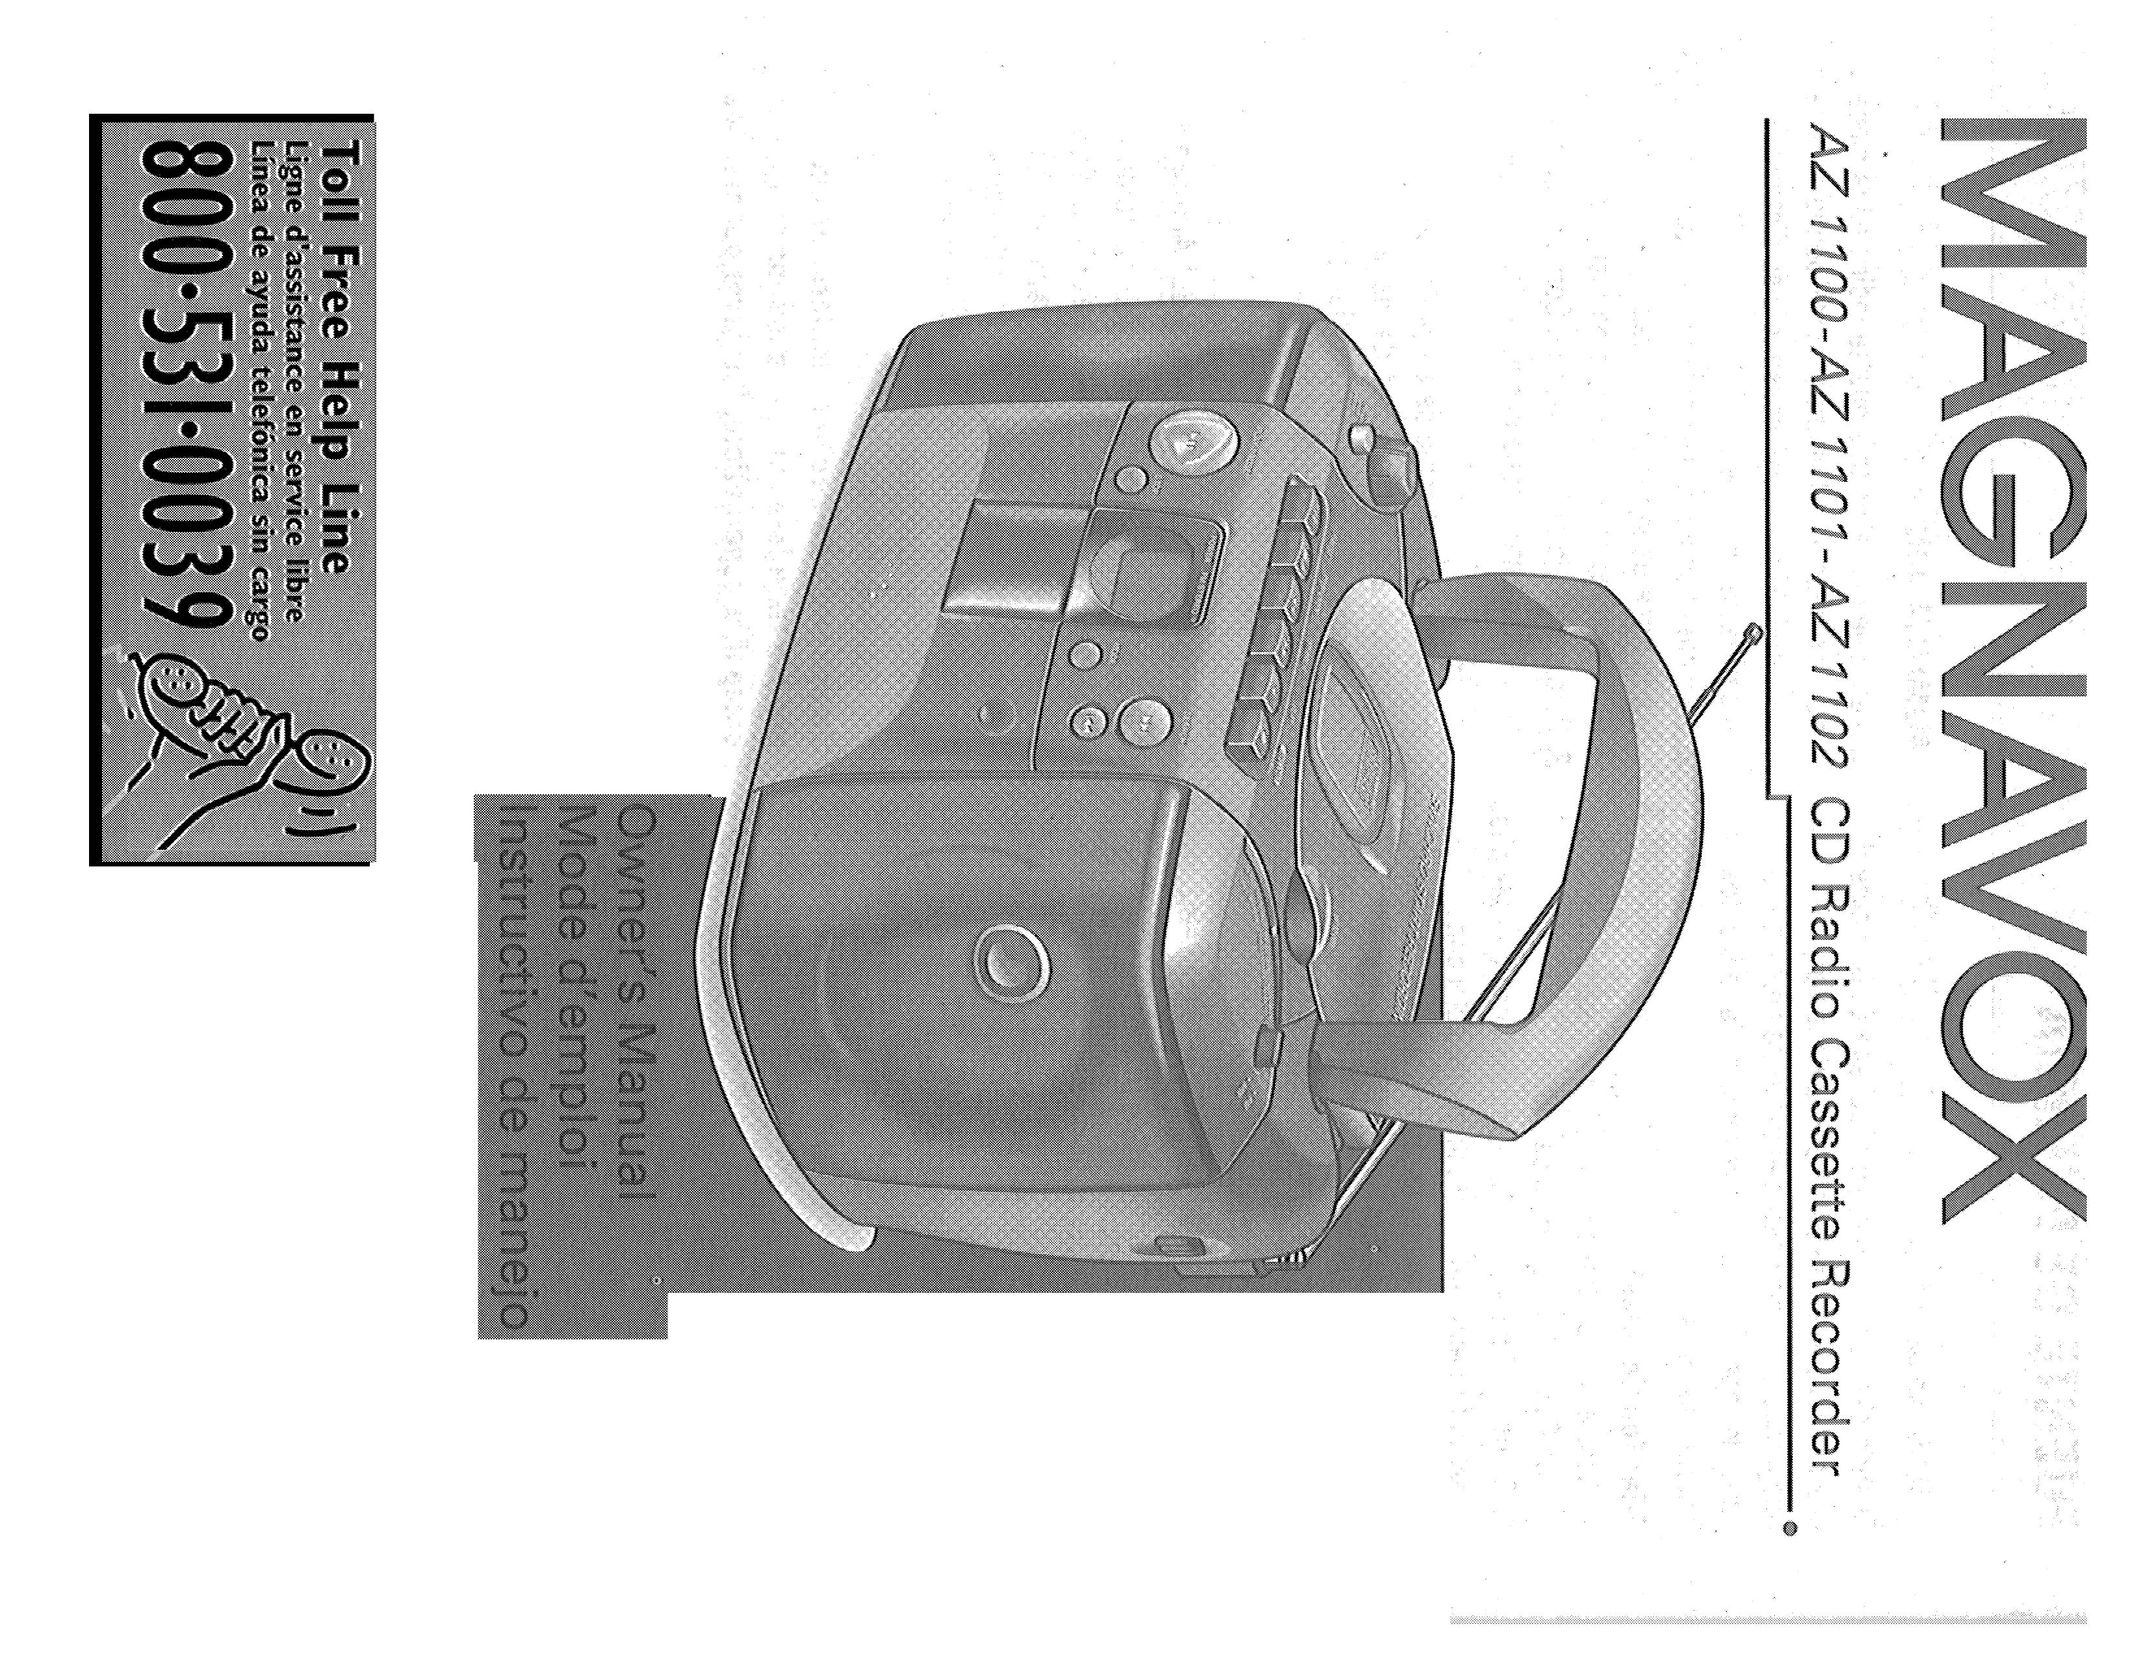 Magnavox AZ-1102 CD Player User Manual